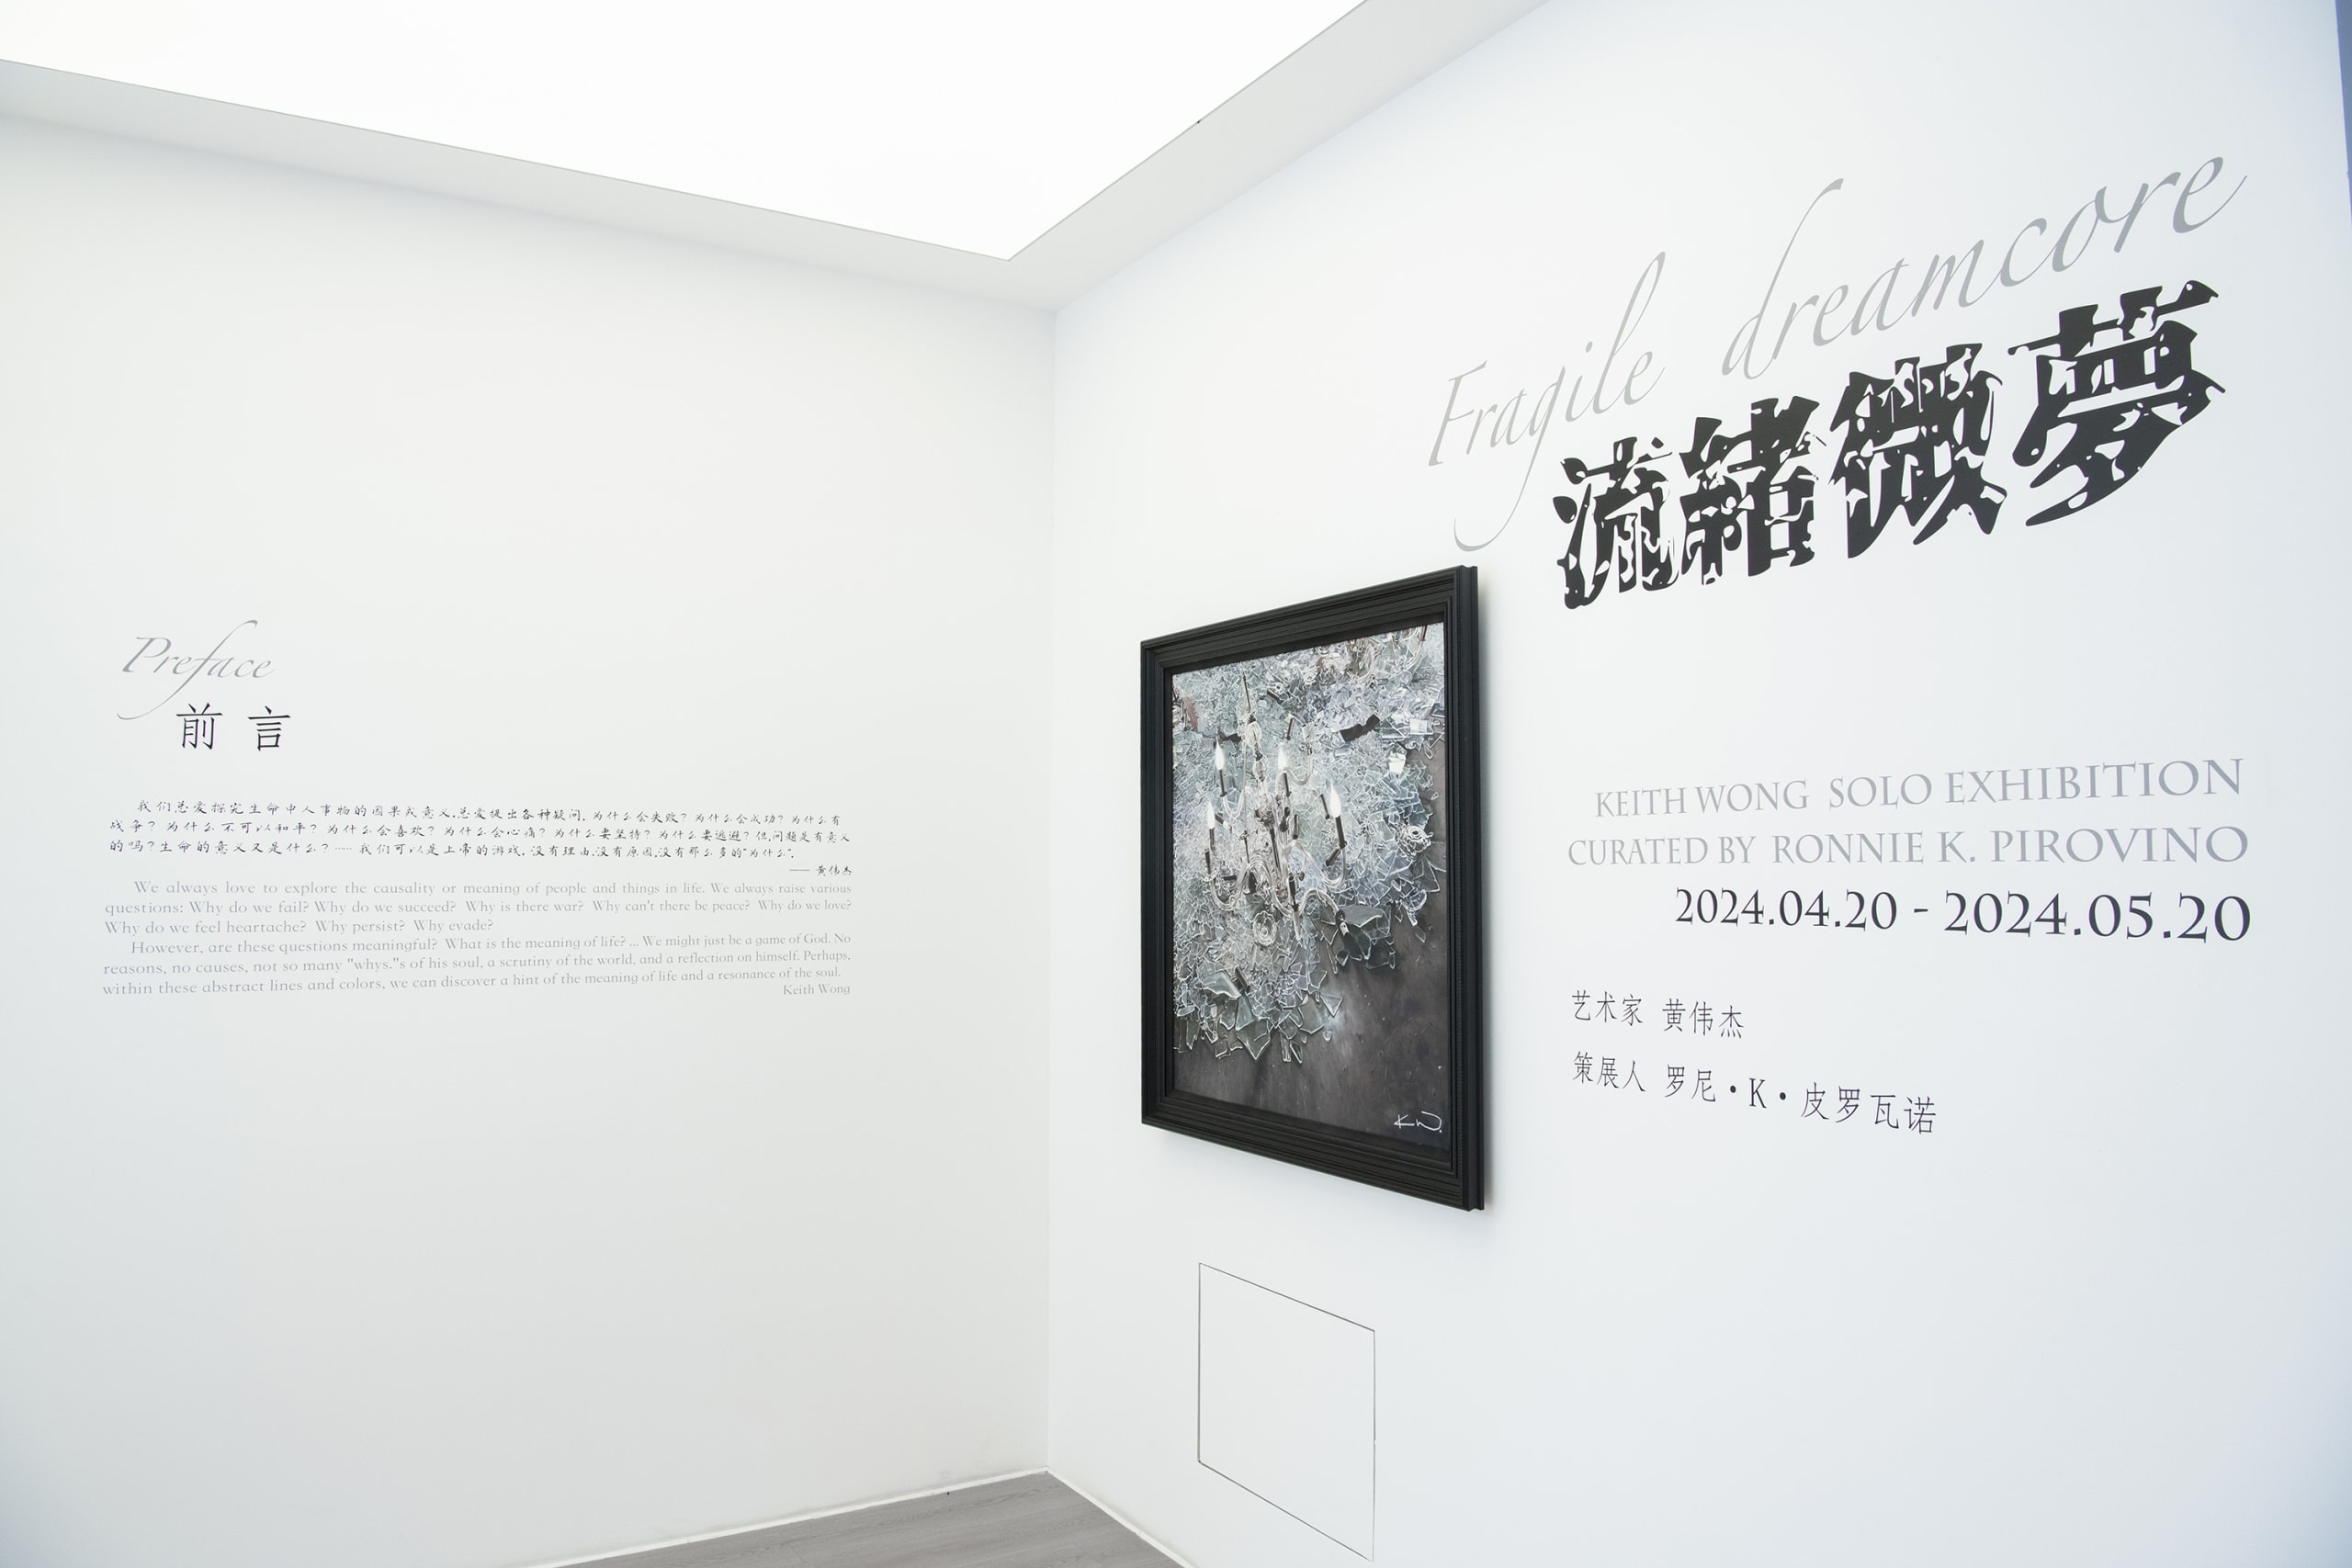 黄伟杰 KEITH WONG 举办全新个展「流绪微梦 FRAGILE DREAMCORE」